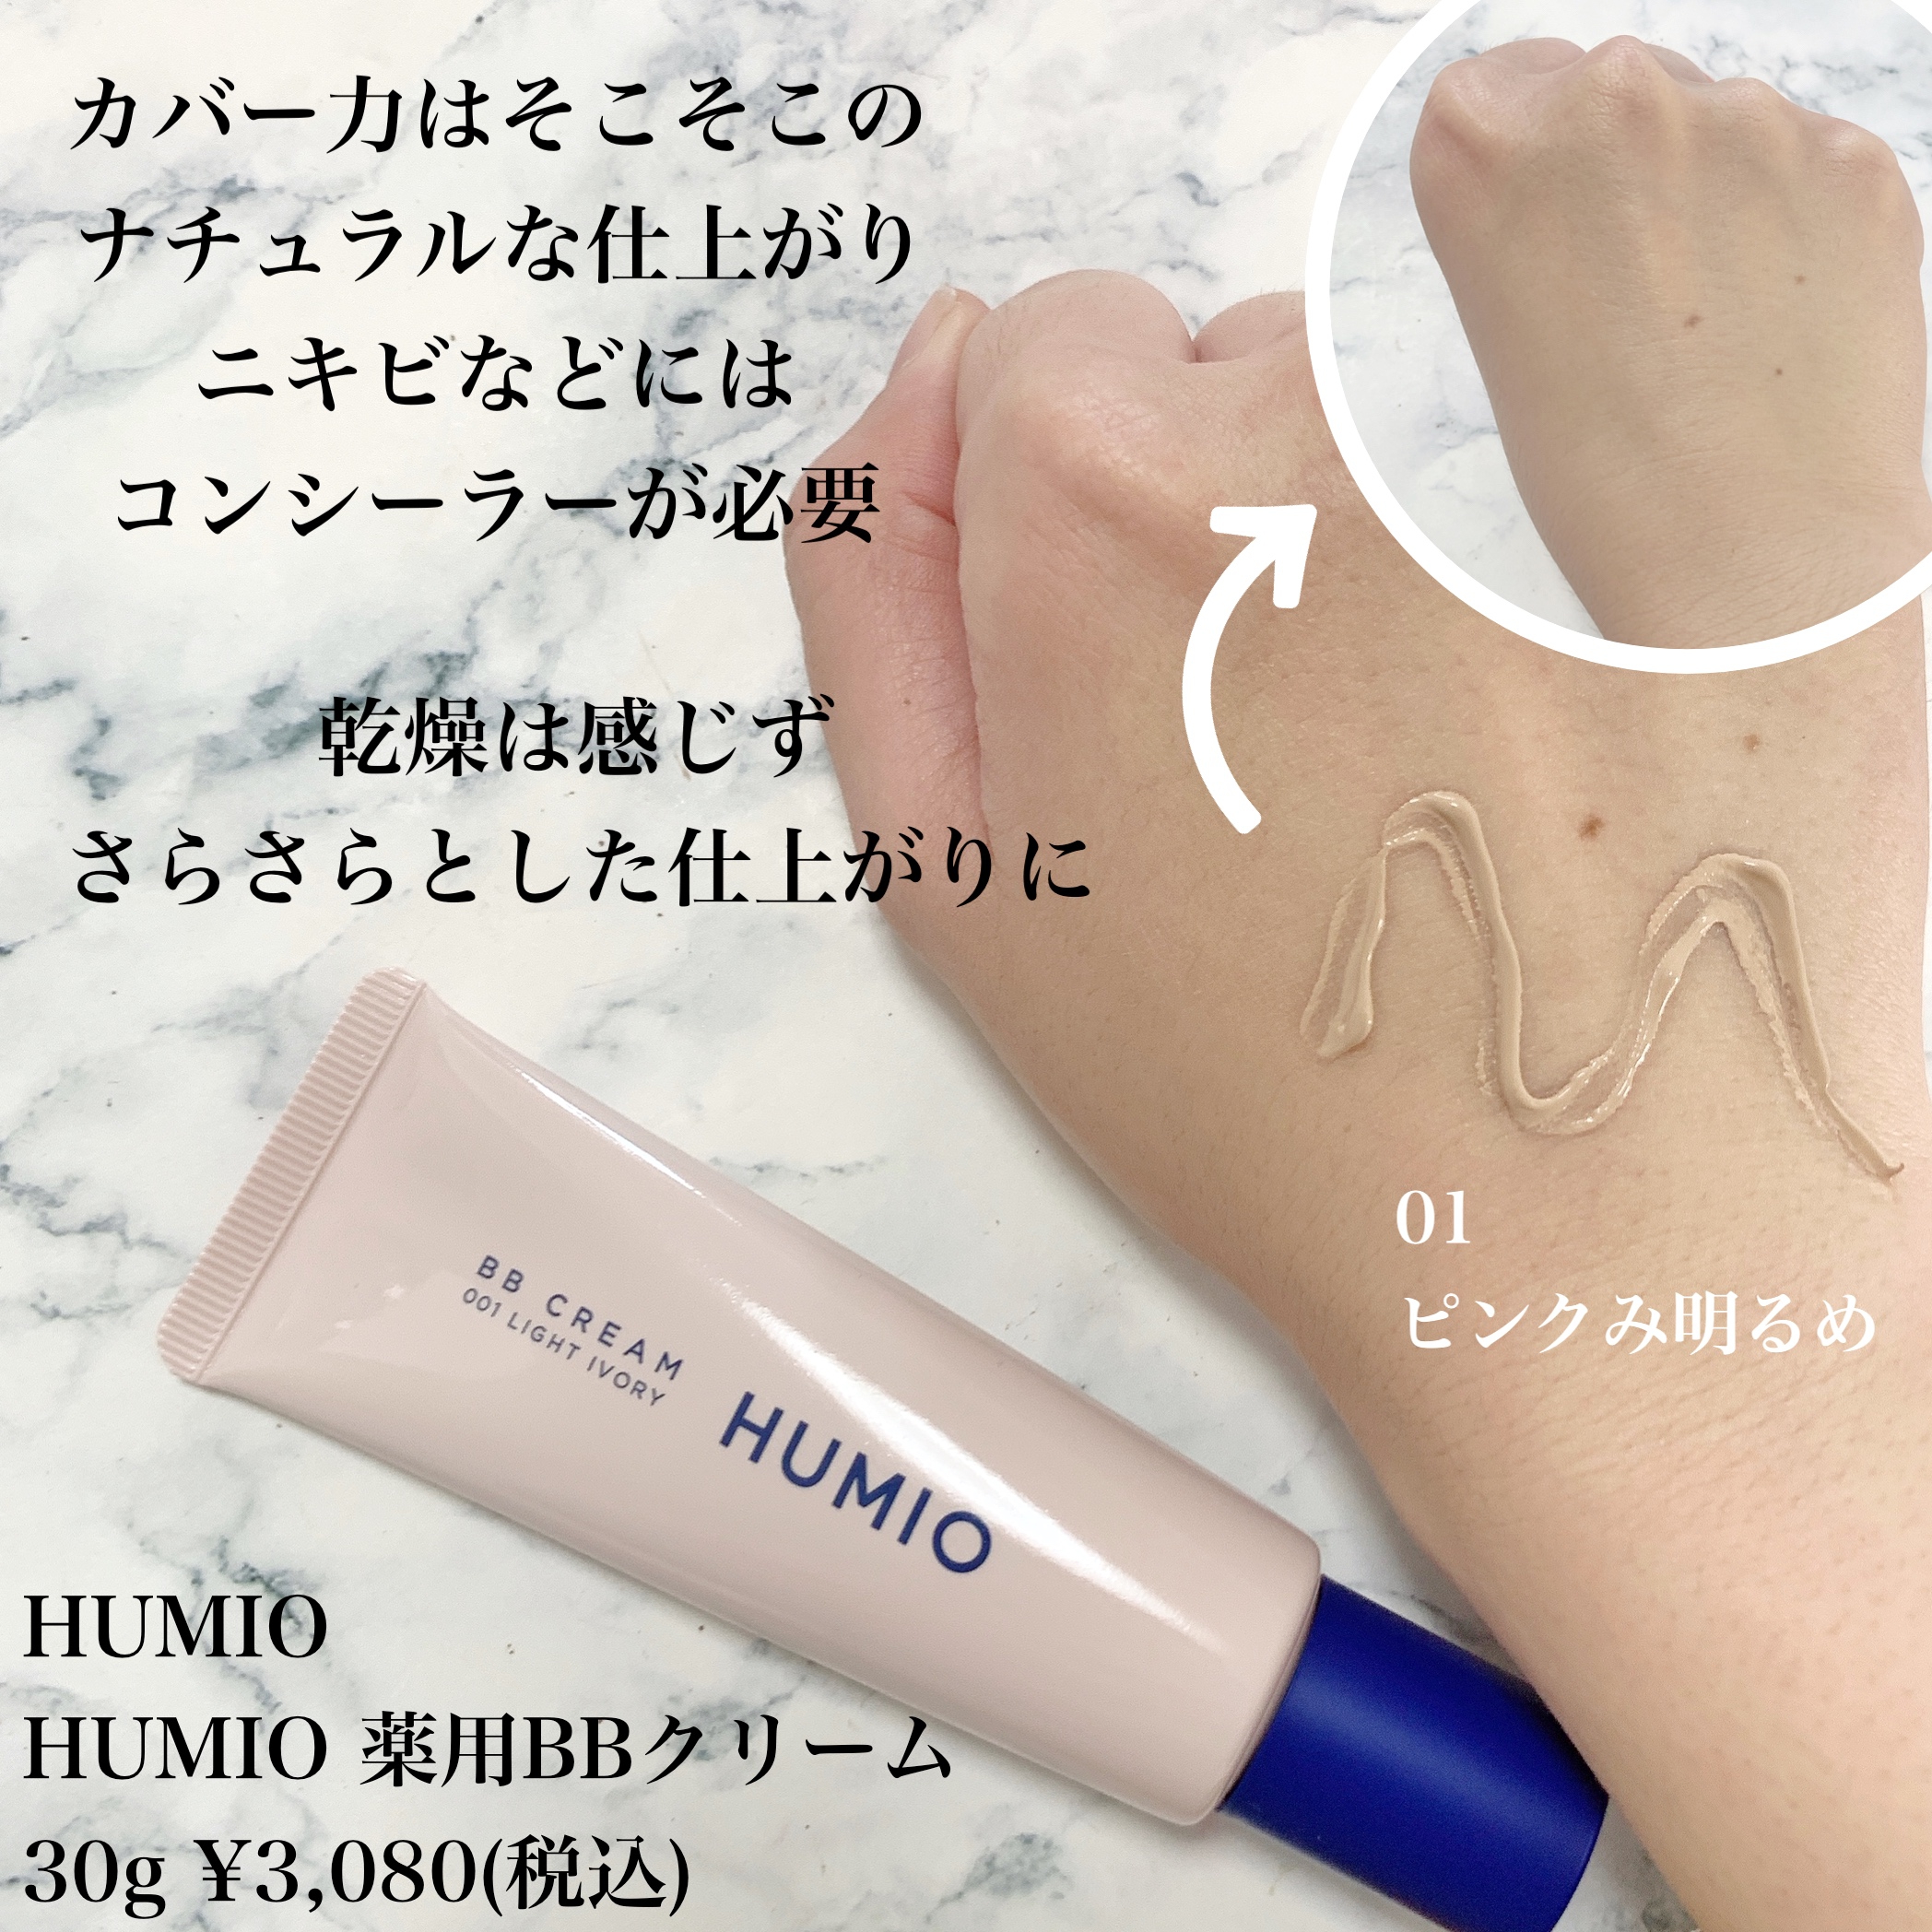 HUMIO(ヒューミオ) 薬用BBクリームに関するまみやこさんの口コミ画像2